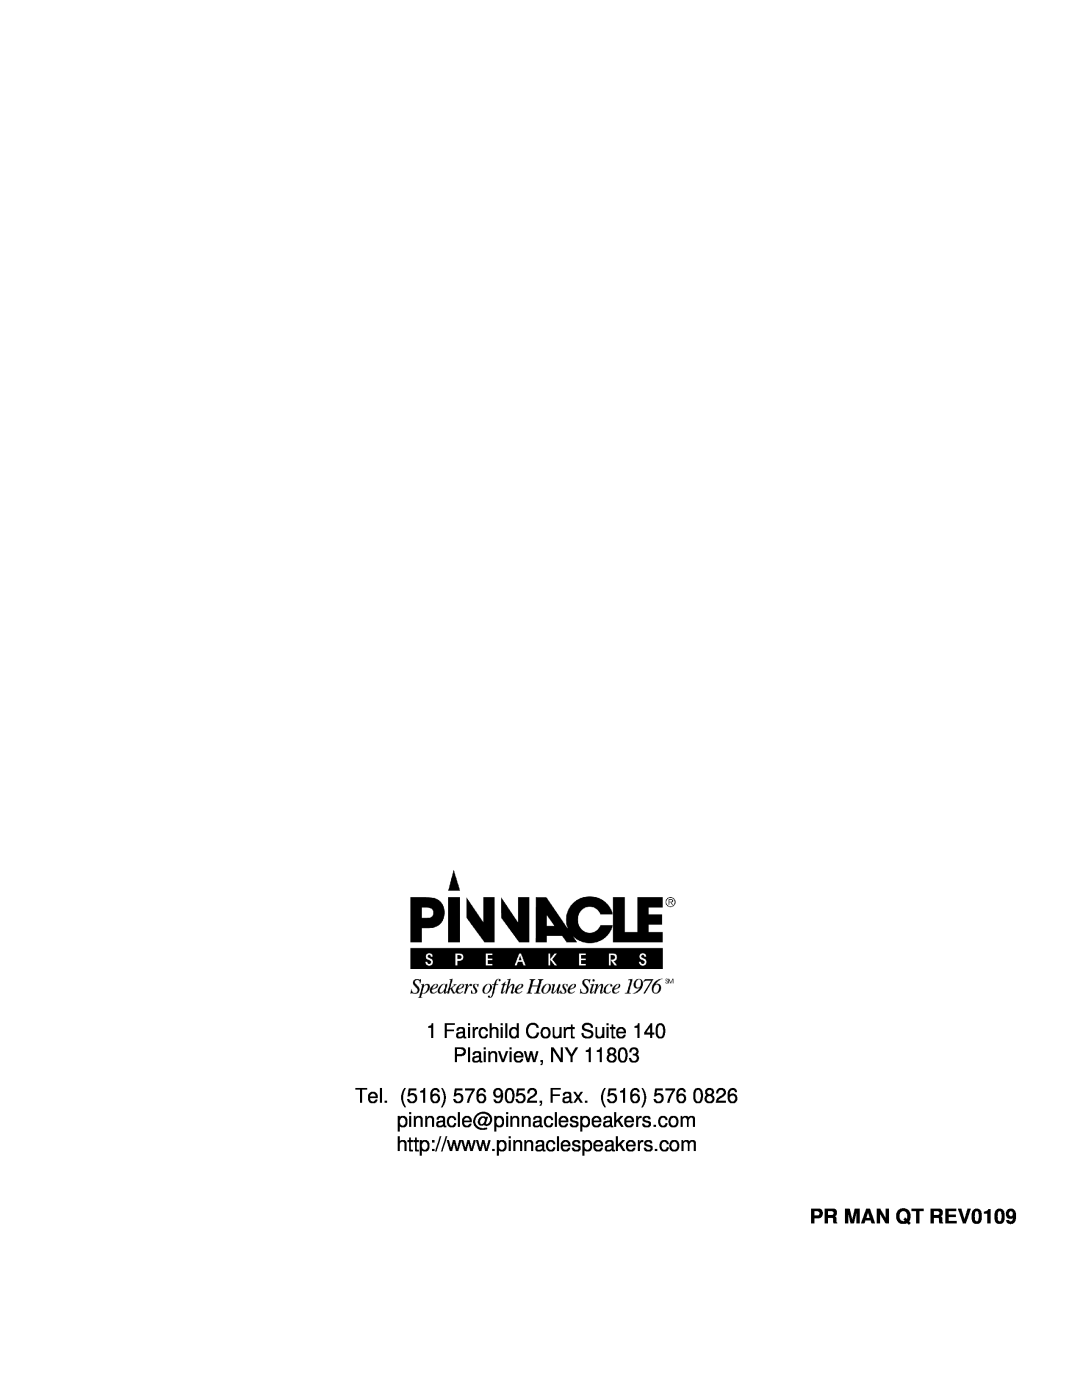 Pinnacle Speakers 66 owner manual PR MAN QT REV0109, Fairchild Court Suite Plainview, NY, Tel. 516 576 9052, Fax 